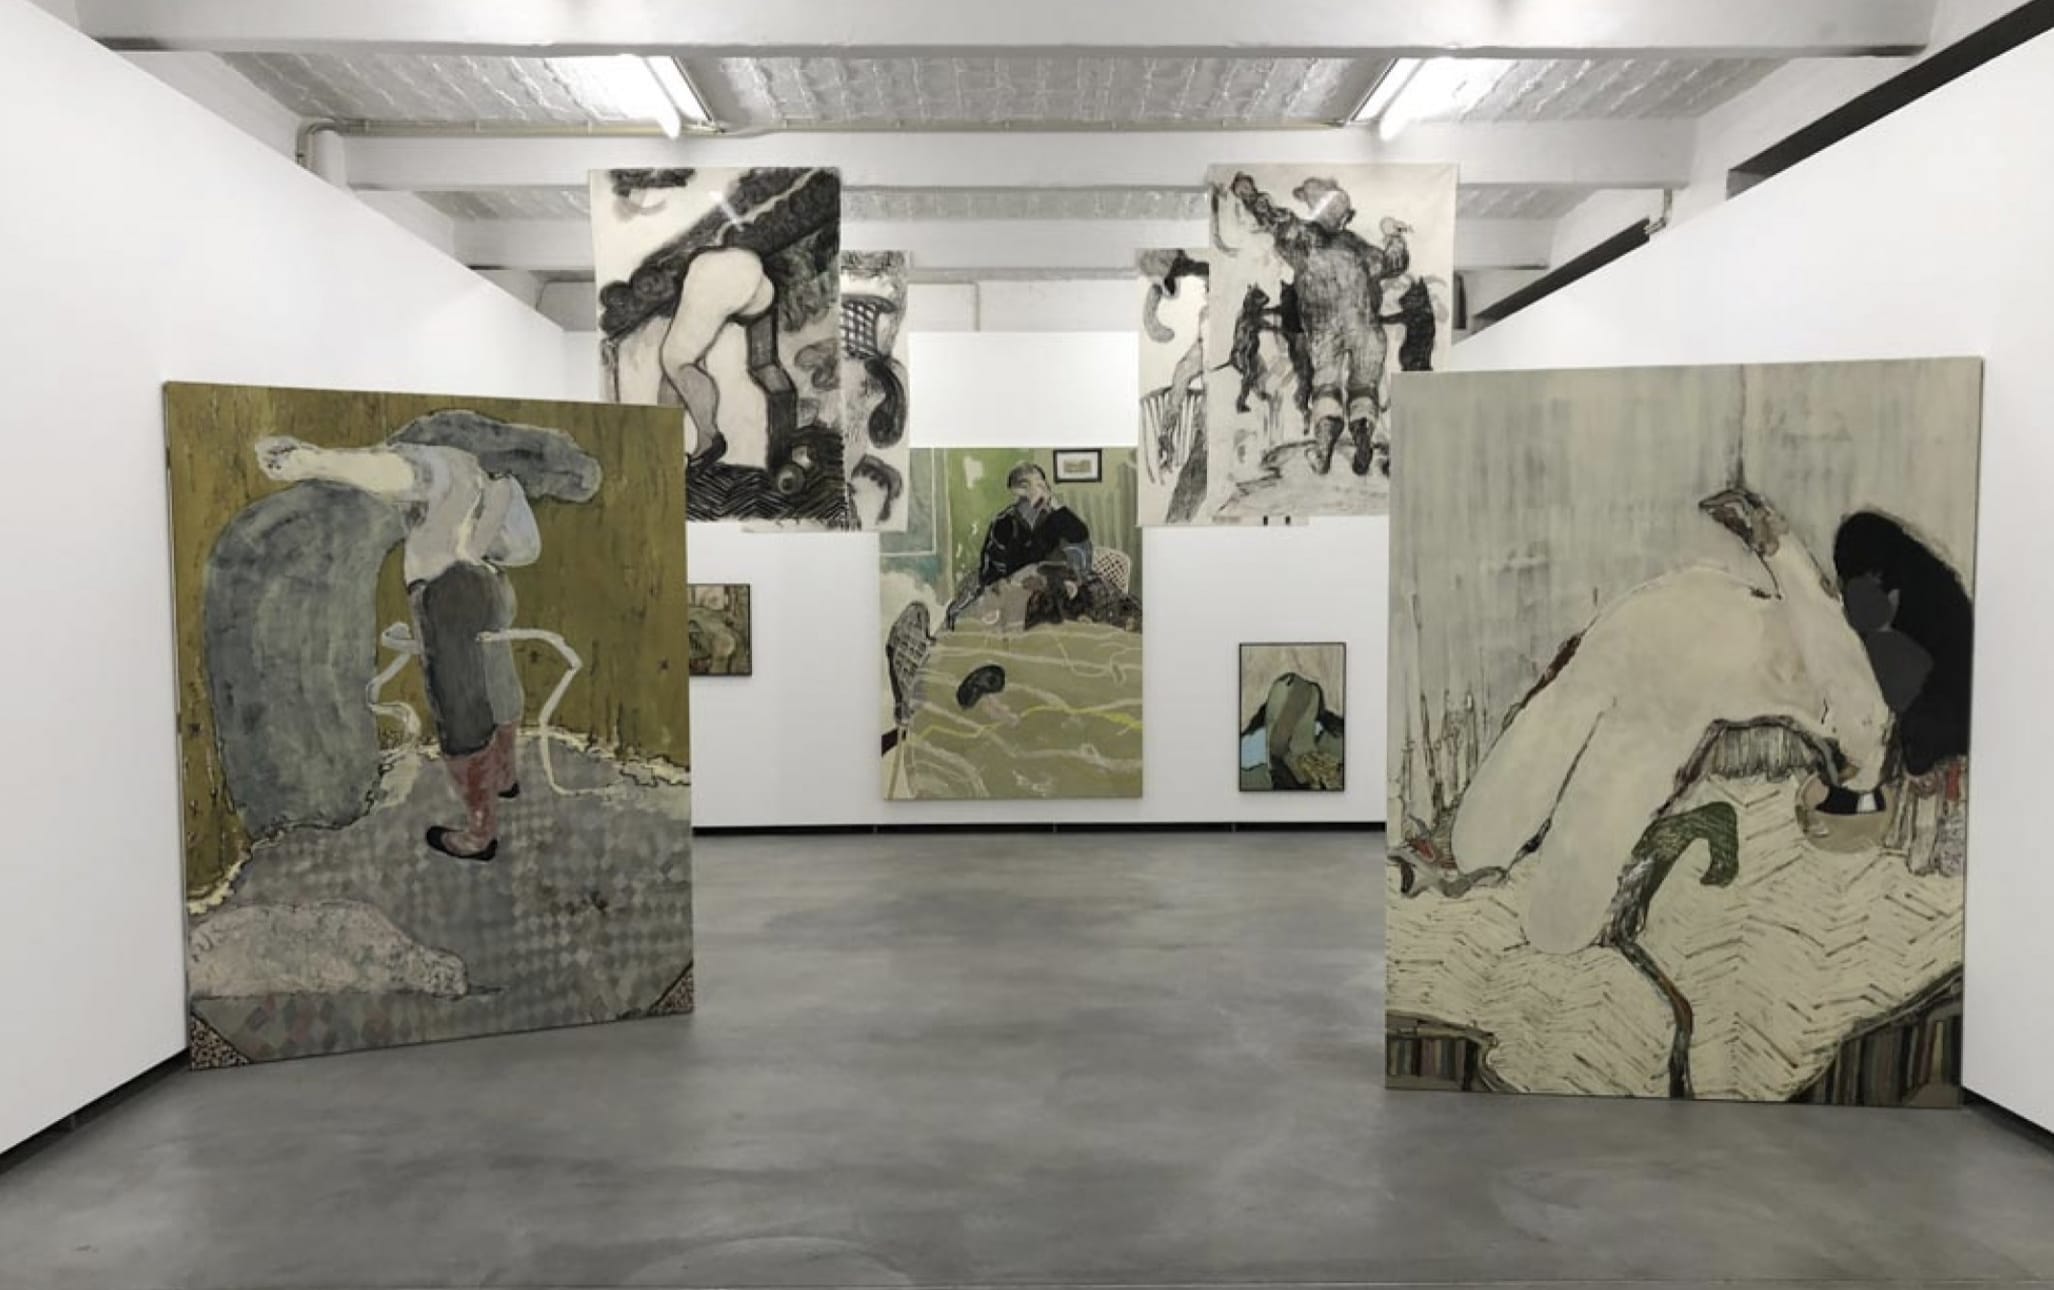 Guglielmo Castelli’s work in São Paulo exhibition